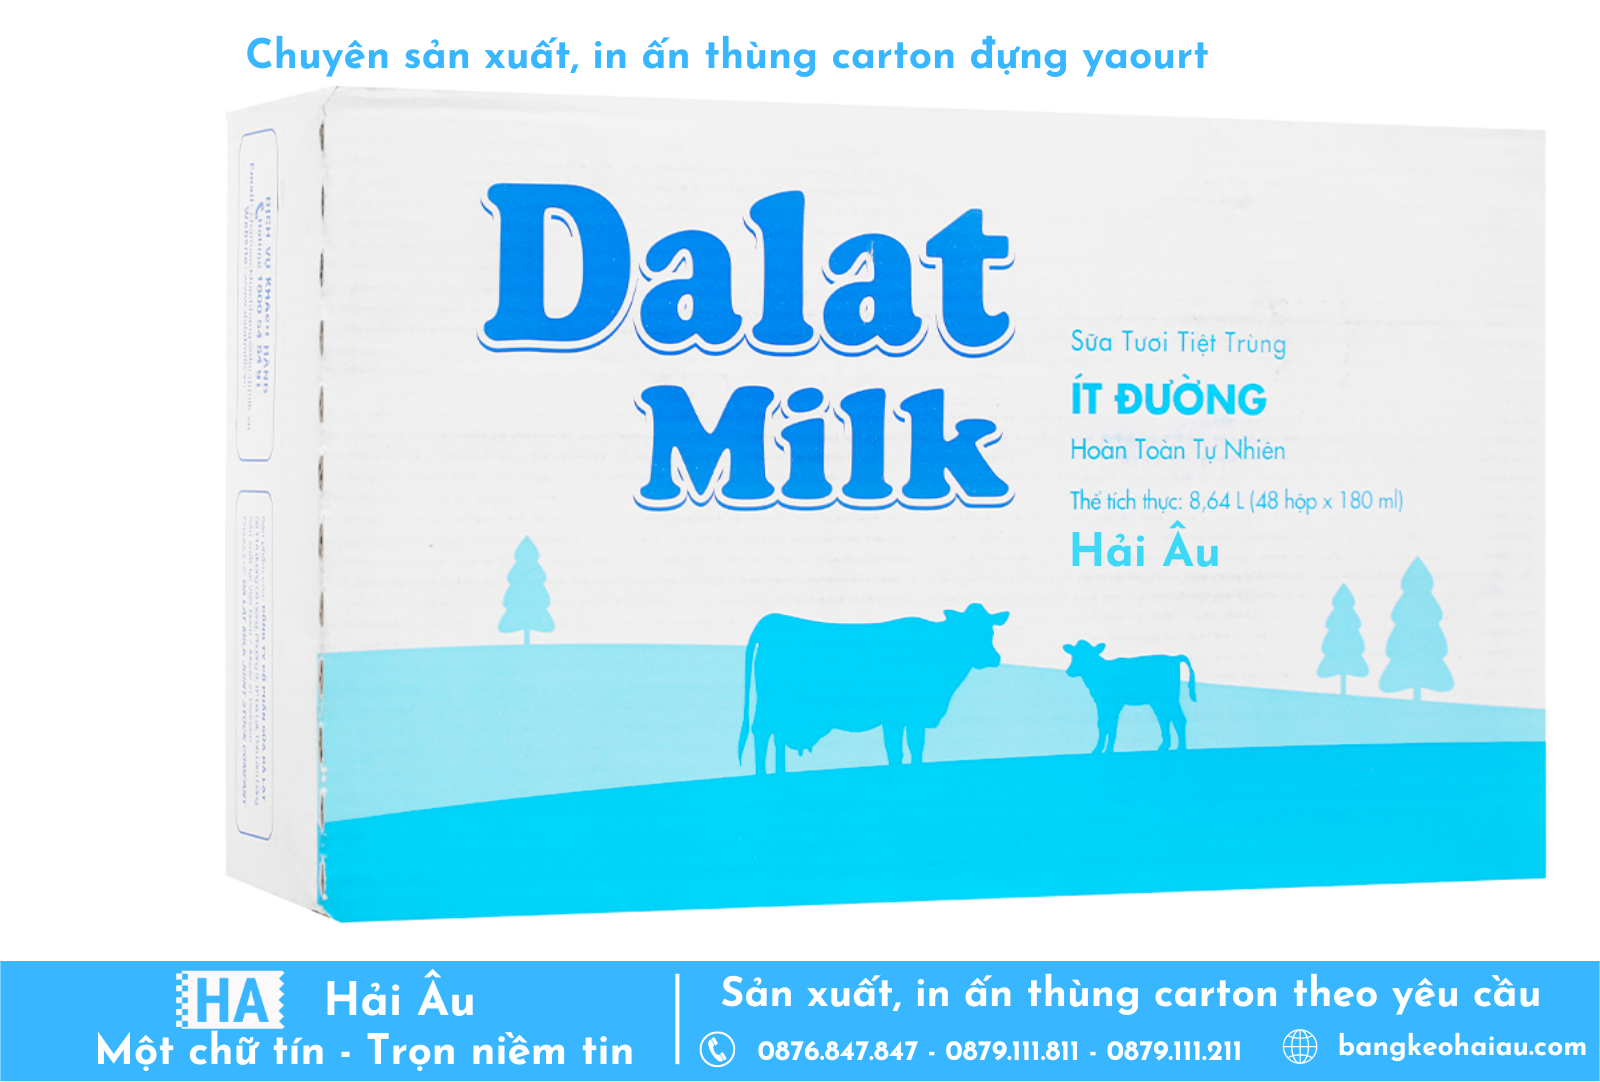 Hải Âu là nhà cung cấp thùng in sữa chua Dalat Milk